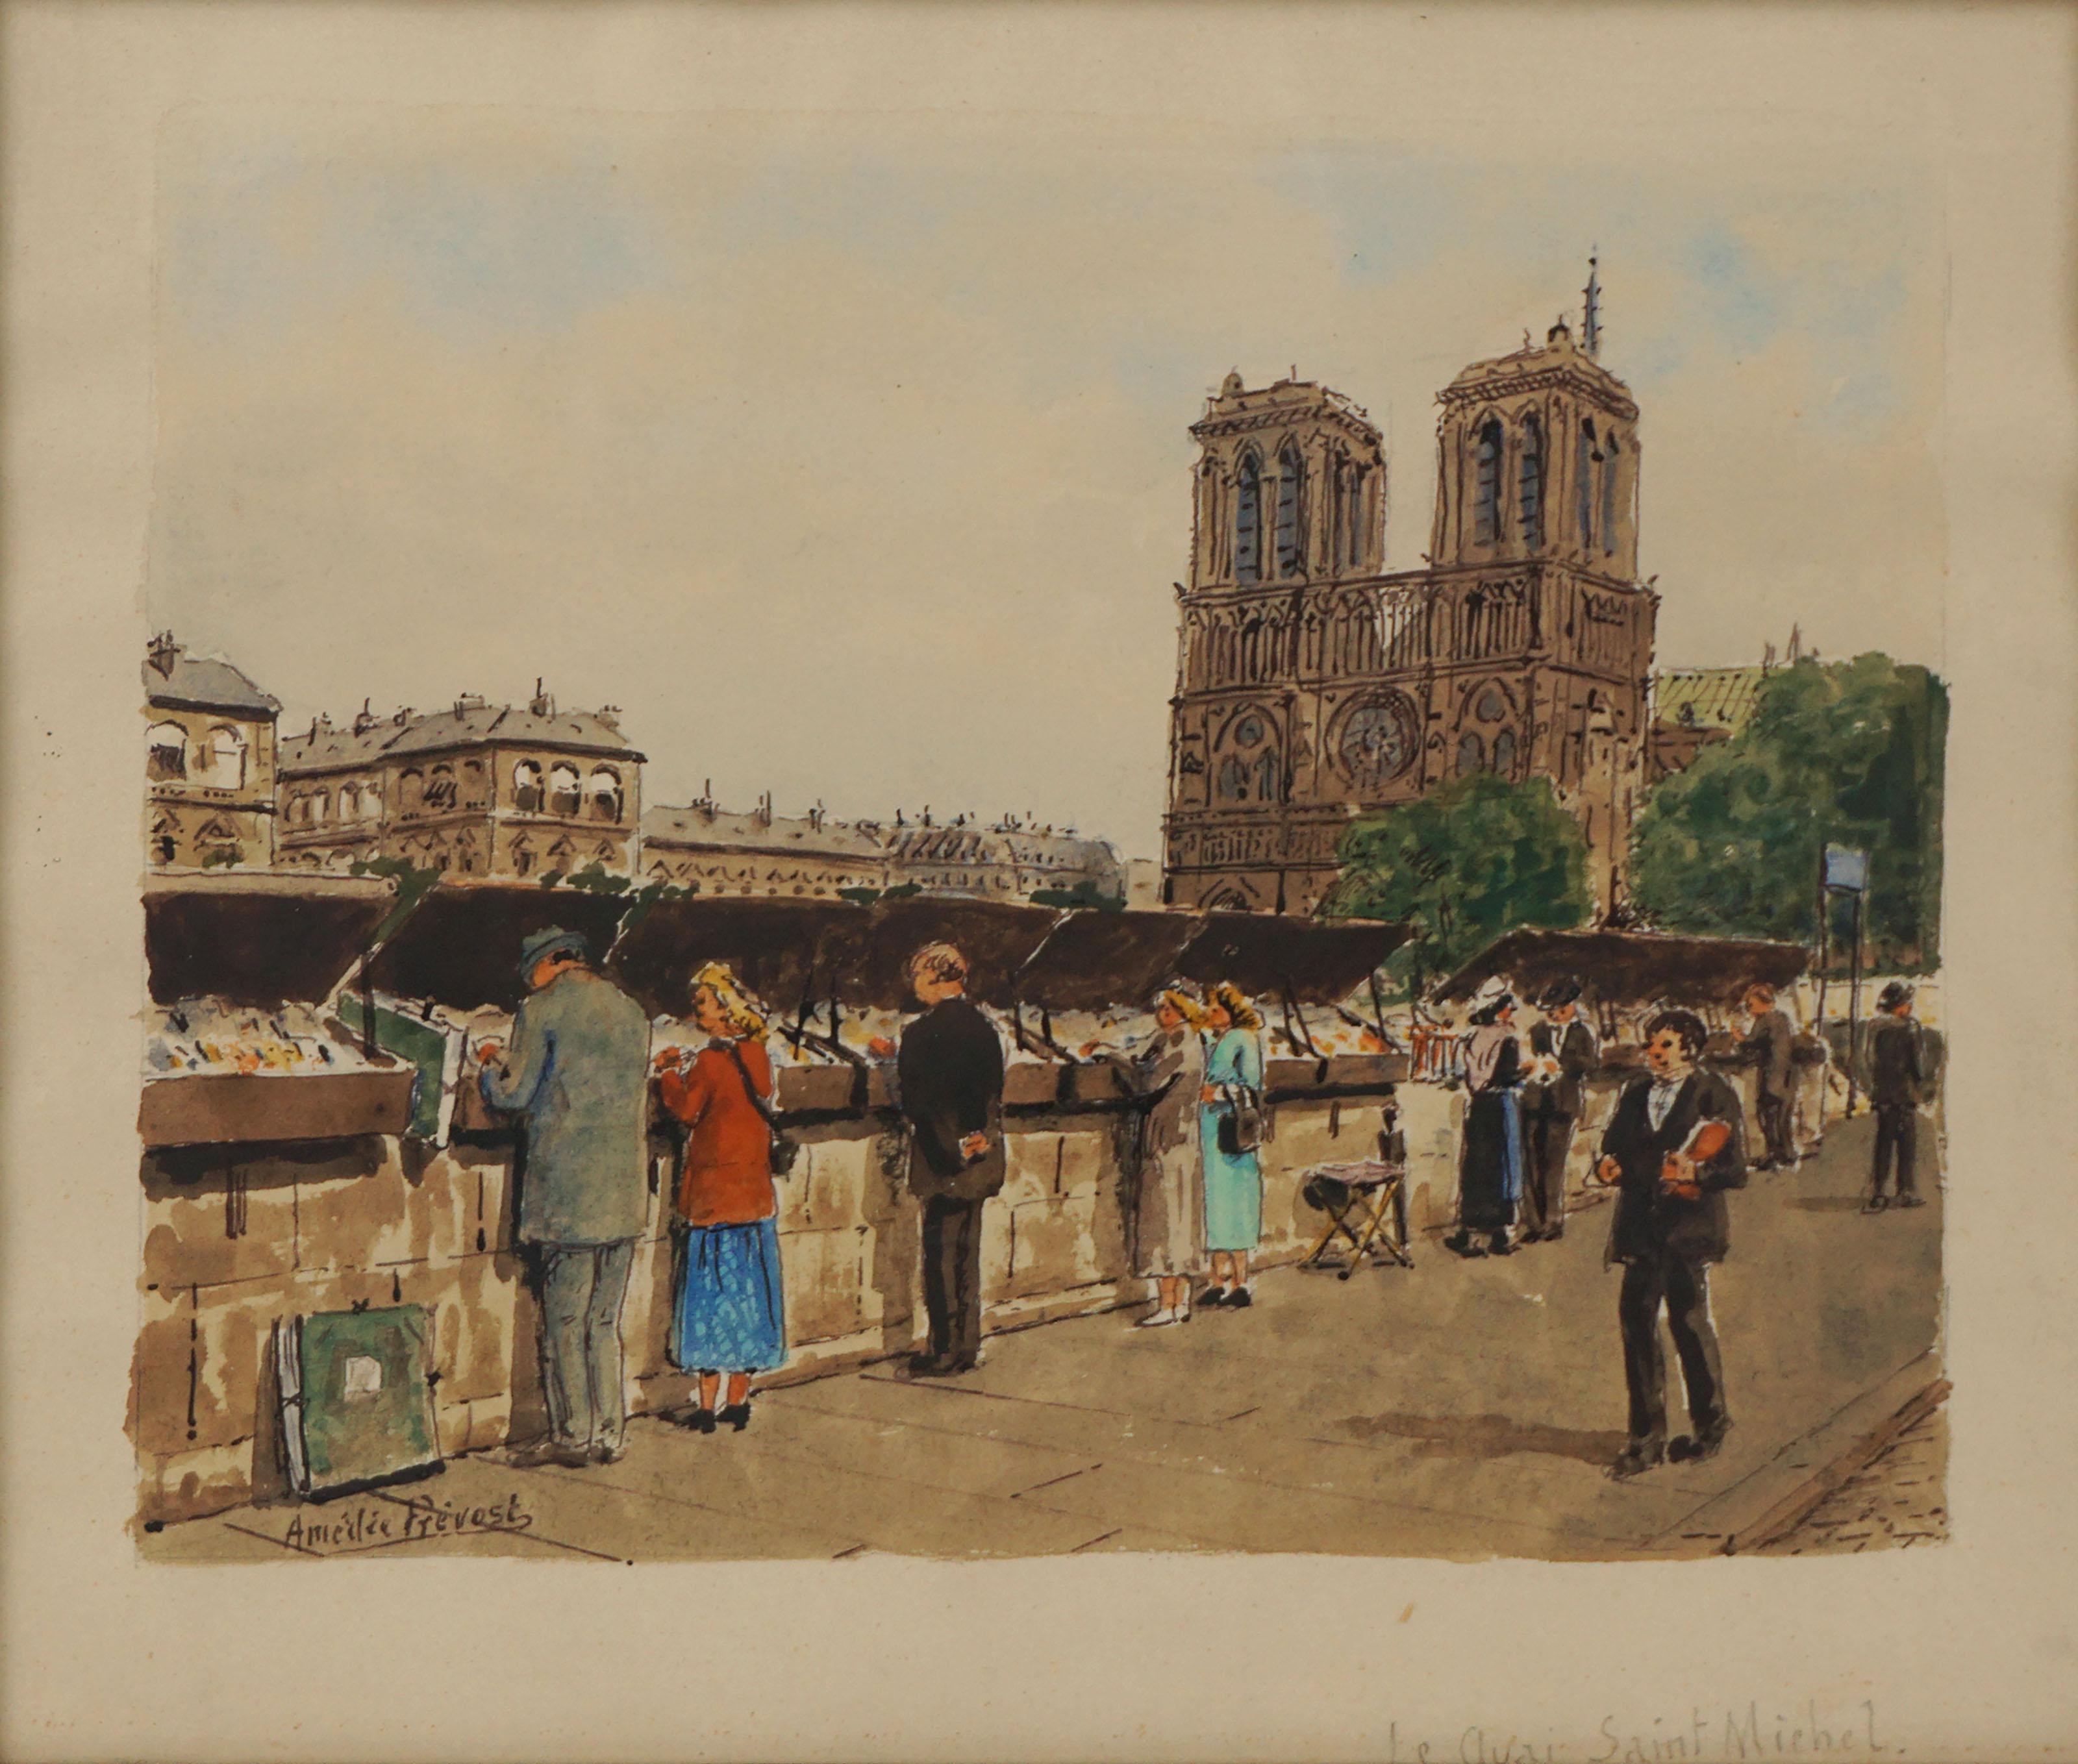 Mid Century Watercolor Paris Book Mart on Le Quai de Saint Michel and Notre Dame - Painting by Amédée Prevost